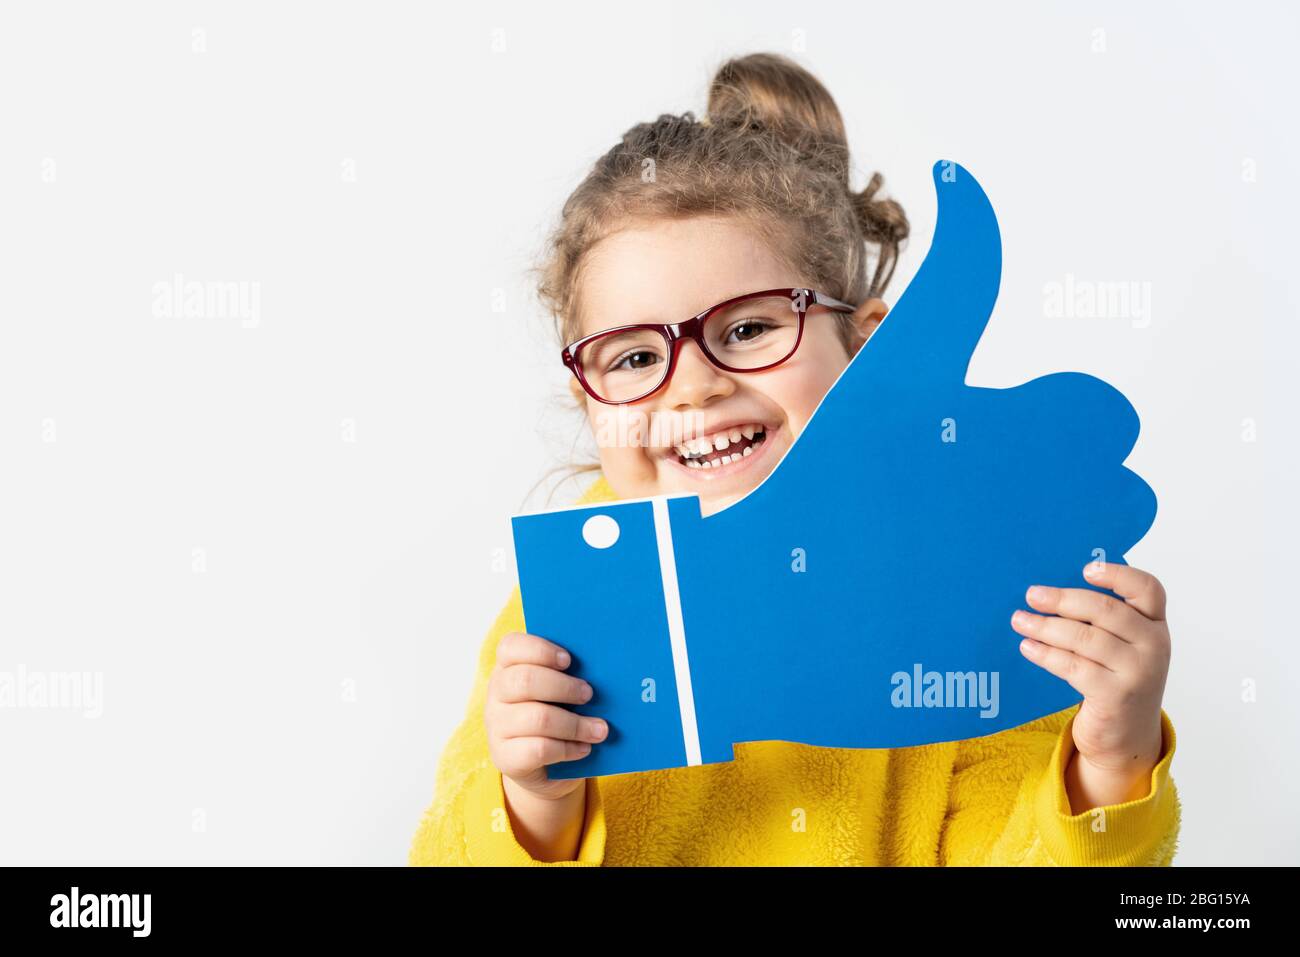 Adorabile bambina sta tenendo un cartone con il segno simile, isolato su sfondo bianco Foto Stock